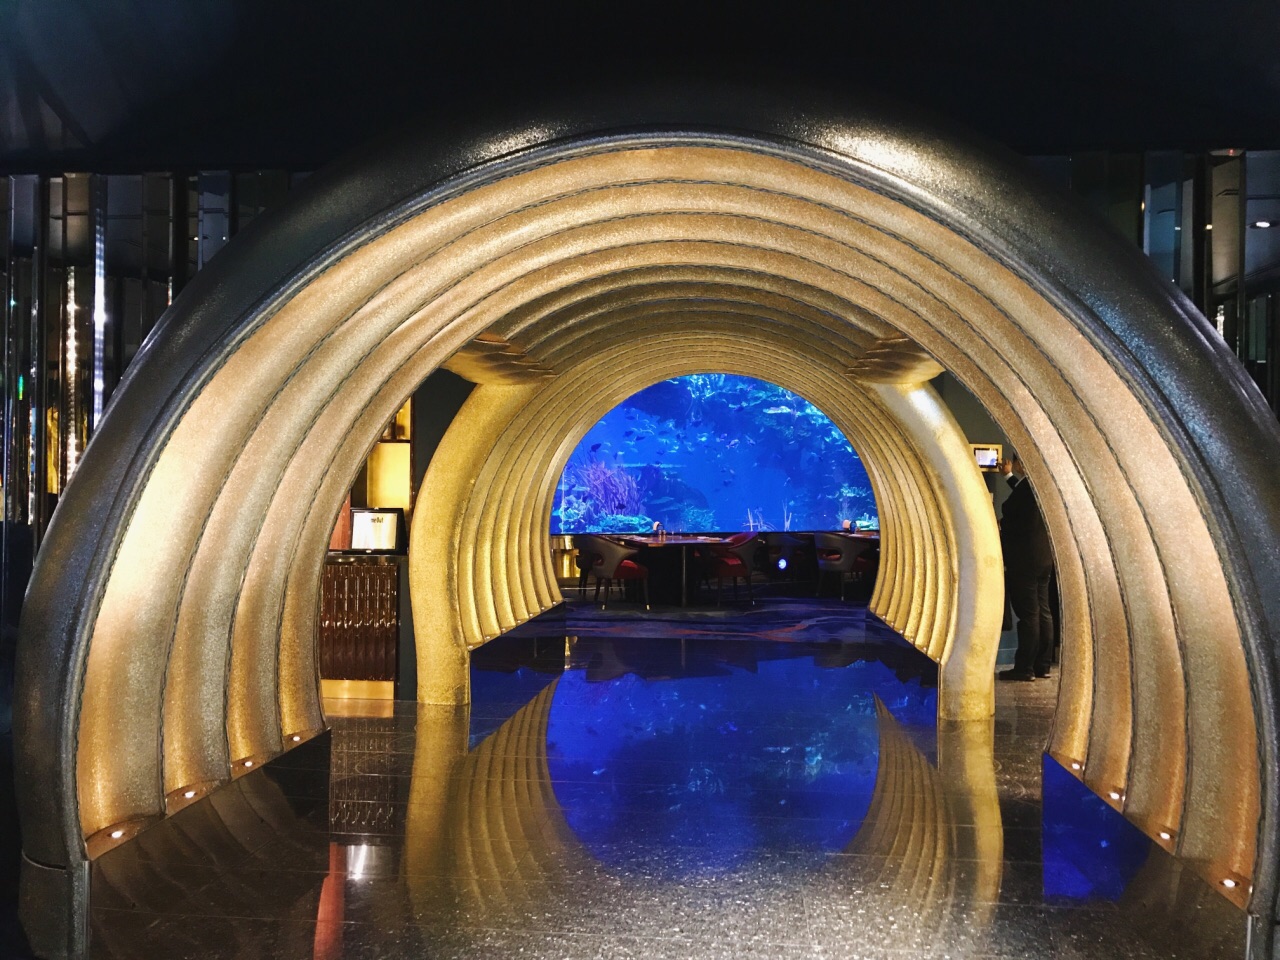 6大马尔代夫水下餐厅，你中意哪一个？ -七彩假期